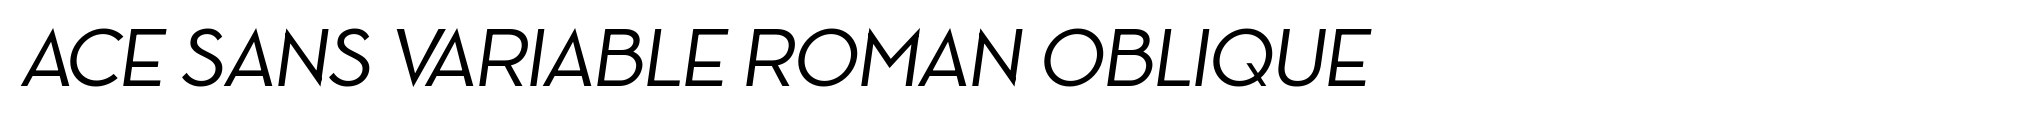 Ace Sans Variable Roman Oblique image